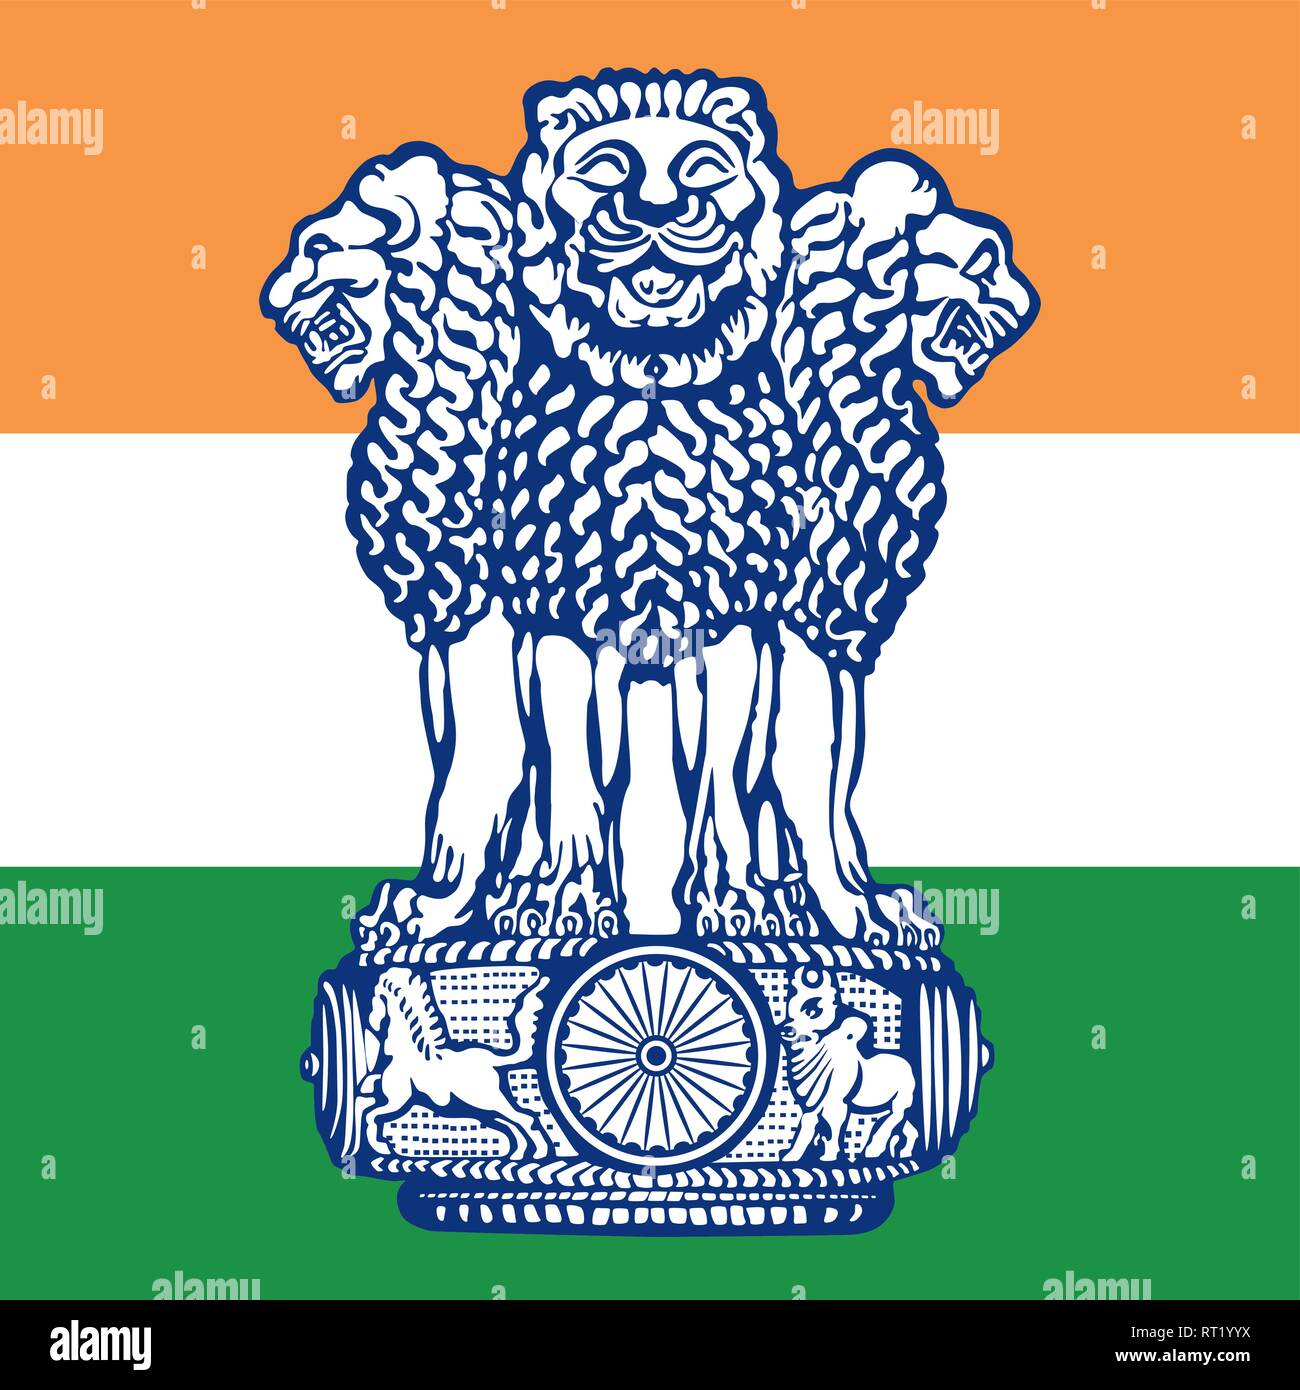 Indien offizielle Wappen auf der nationalen Flagge Stock Vektor